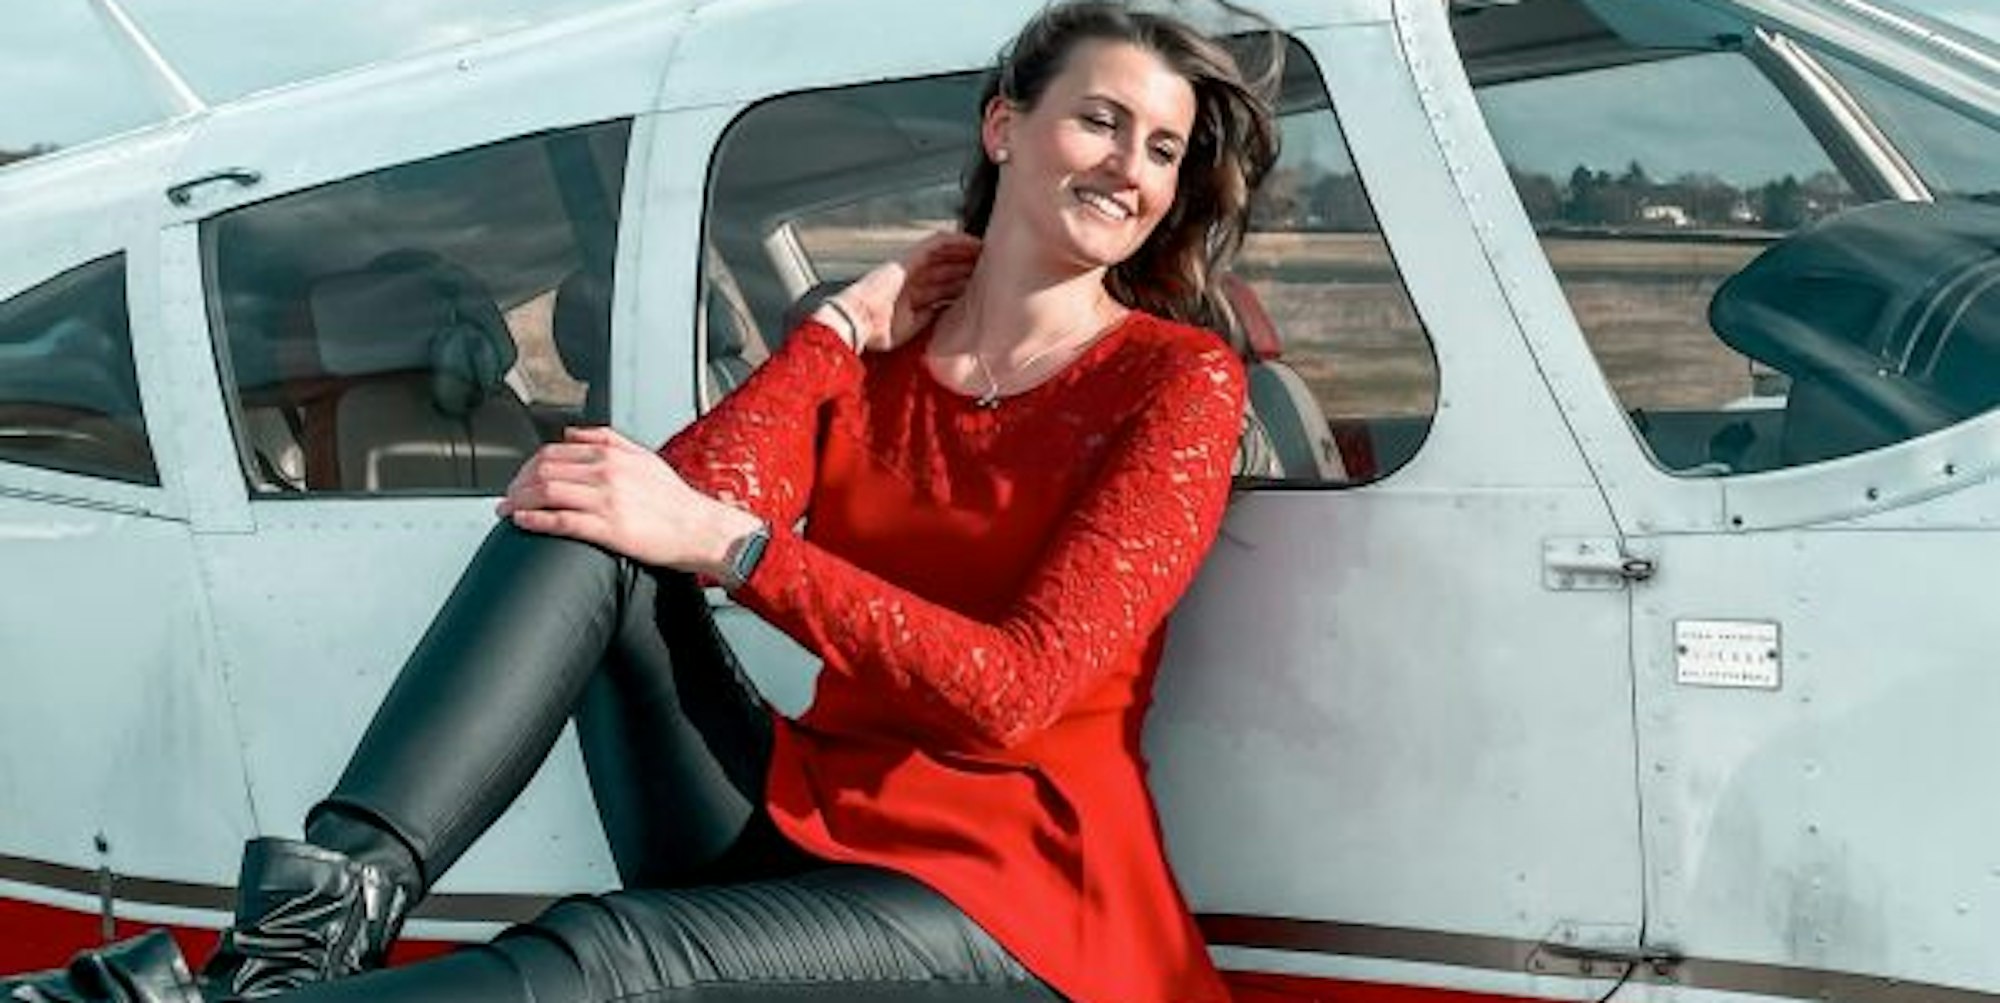 Leidenschaftliche Pilotin: Die Kommernerin Linda Kotzur hat heimlich ihren Pilotenschein gemacht.